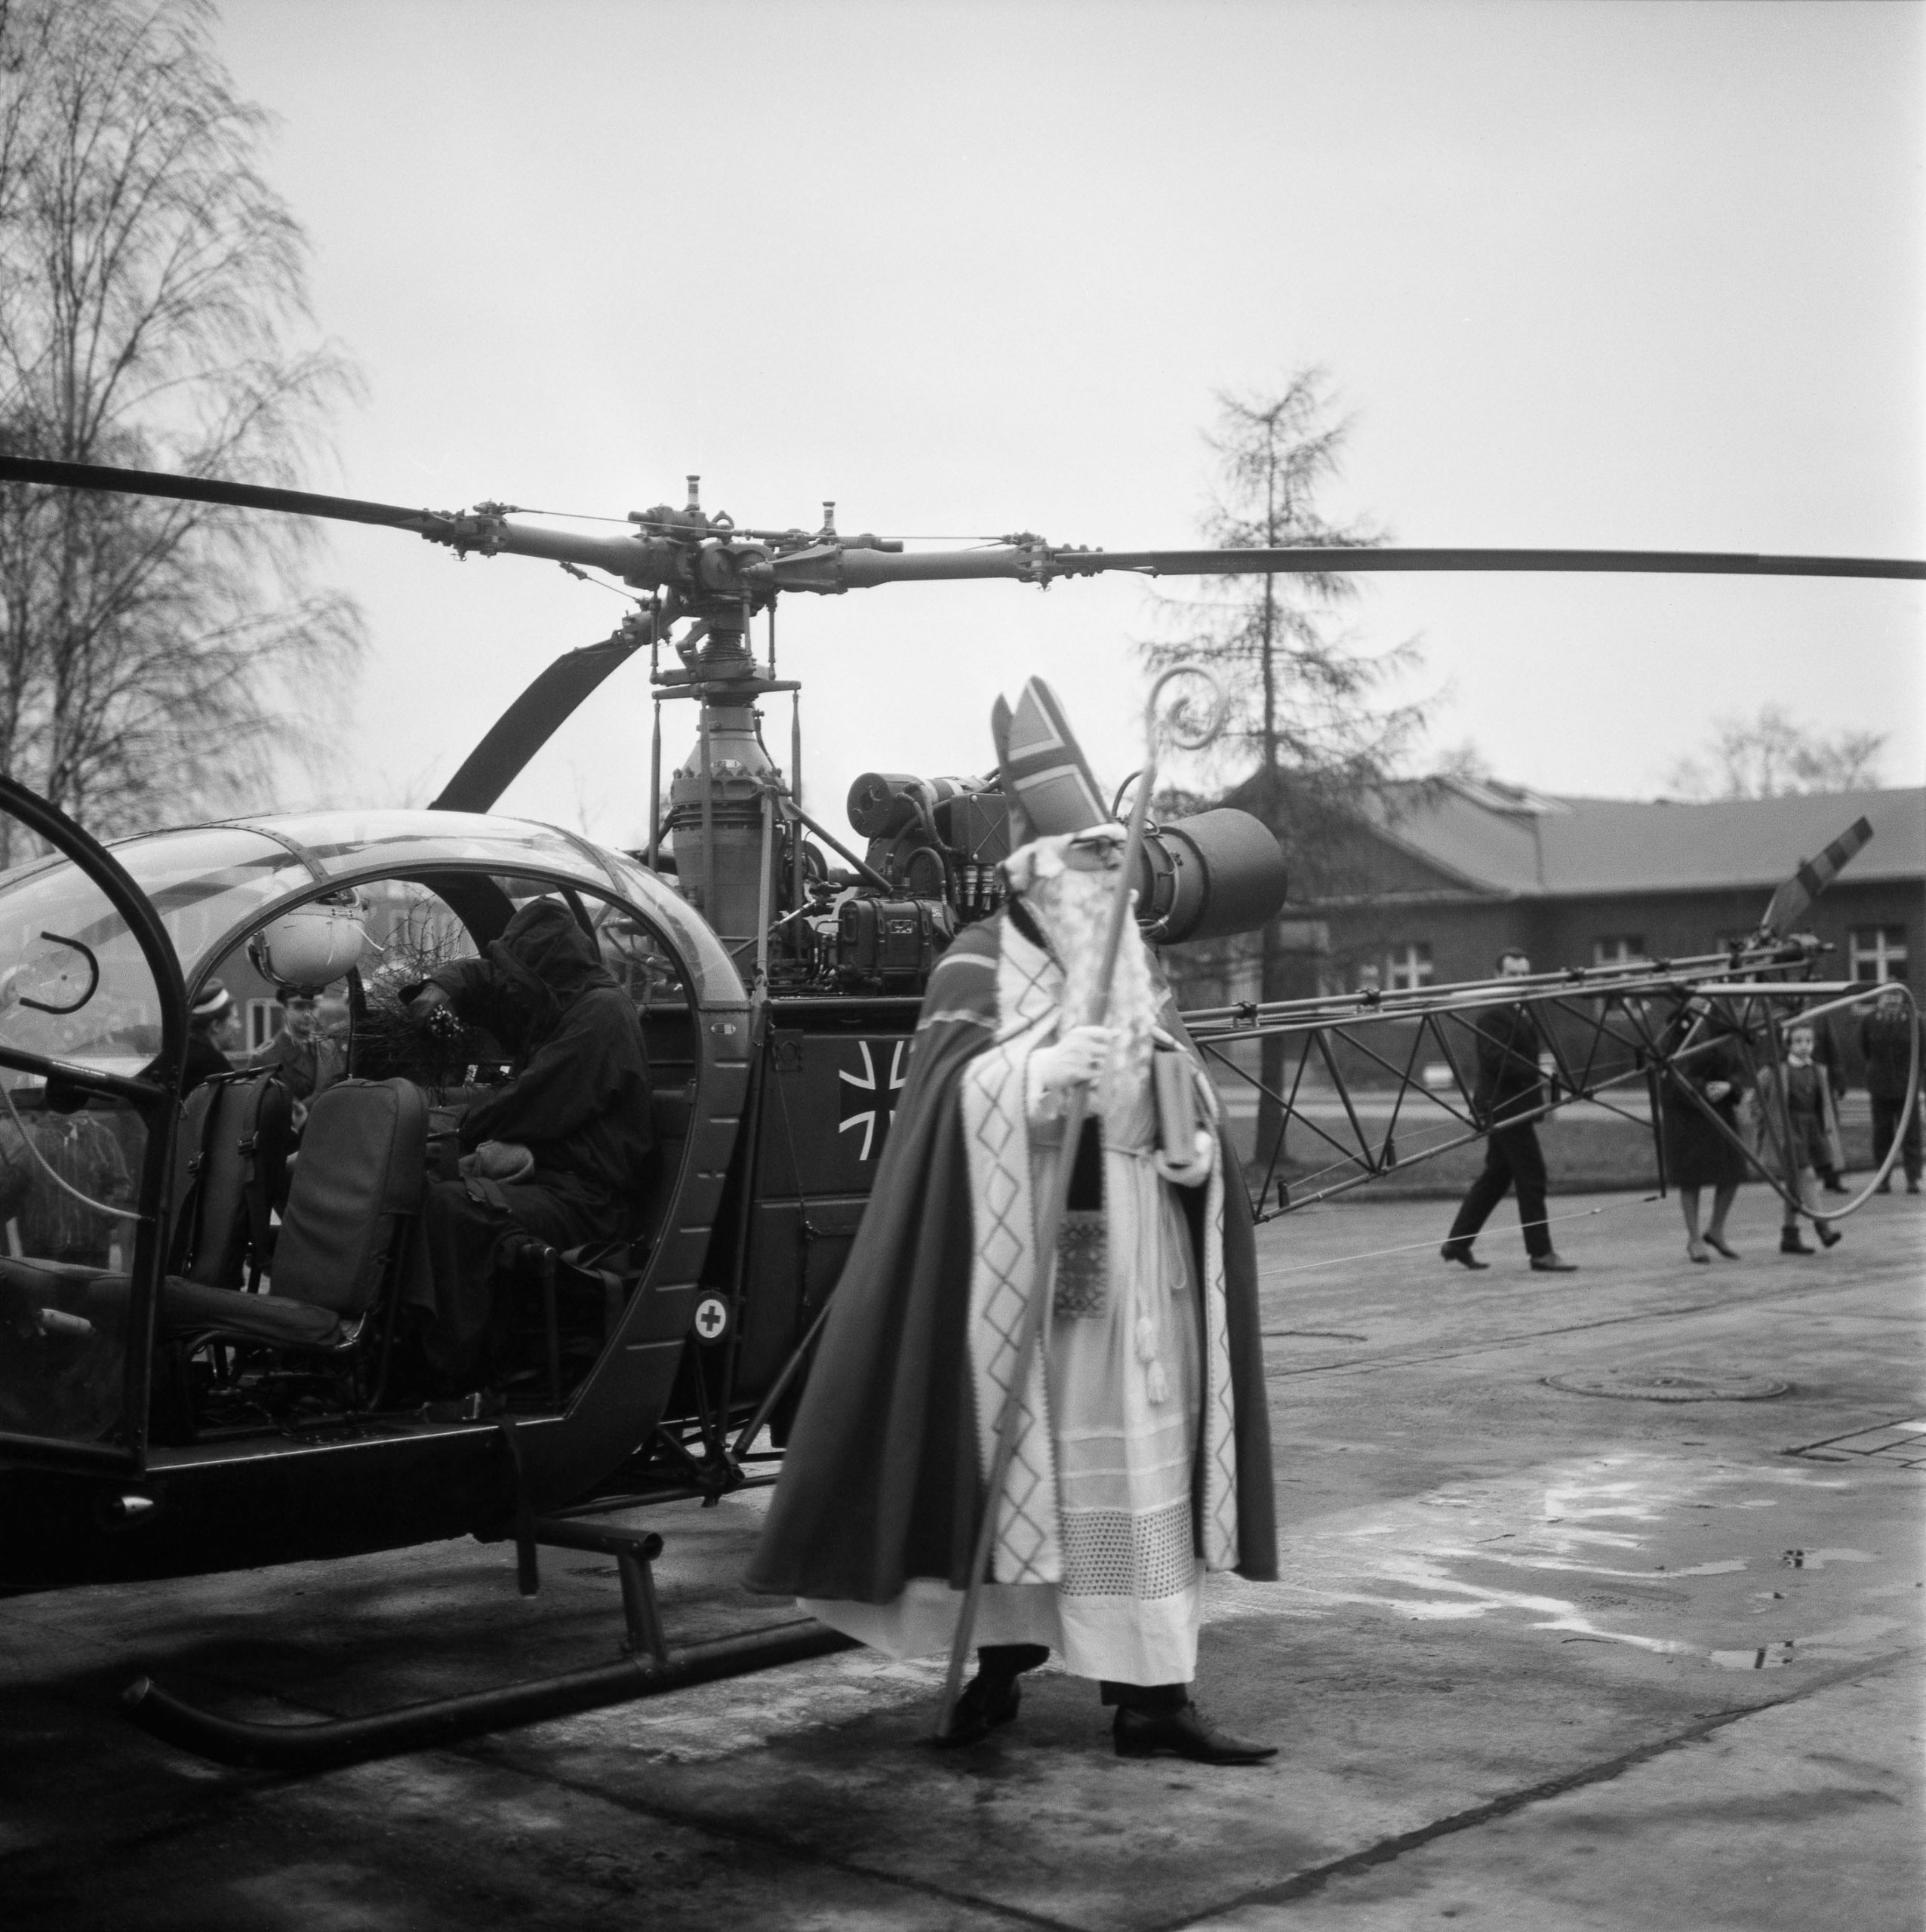 Side kick: 1965 kam der Nikolaus im Helikopter